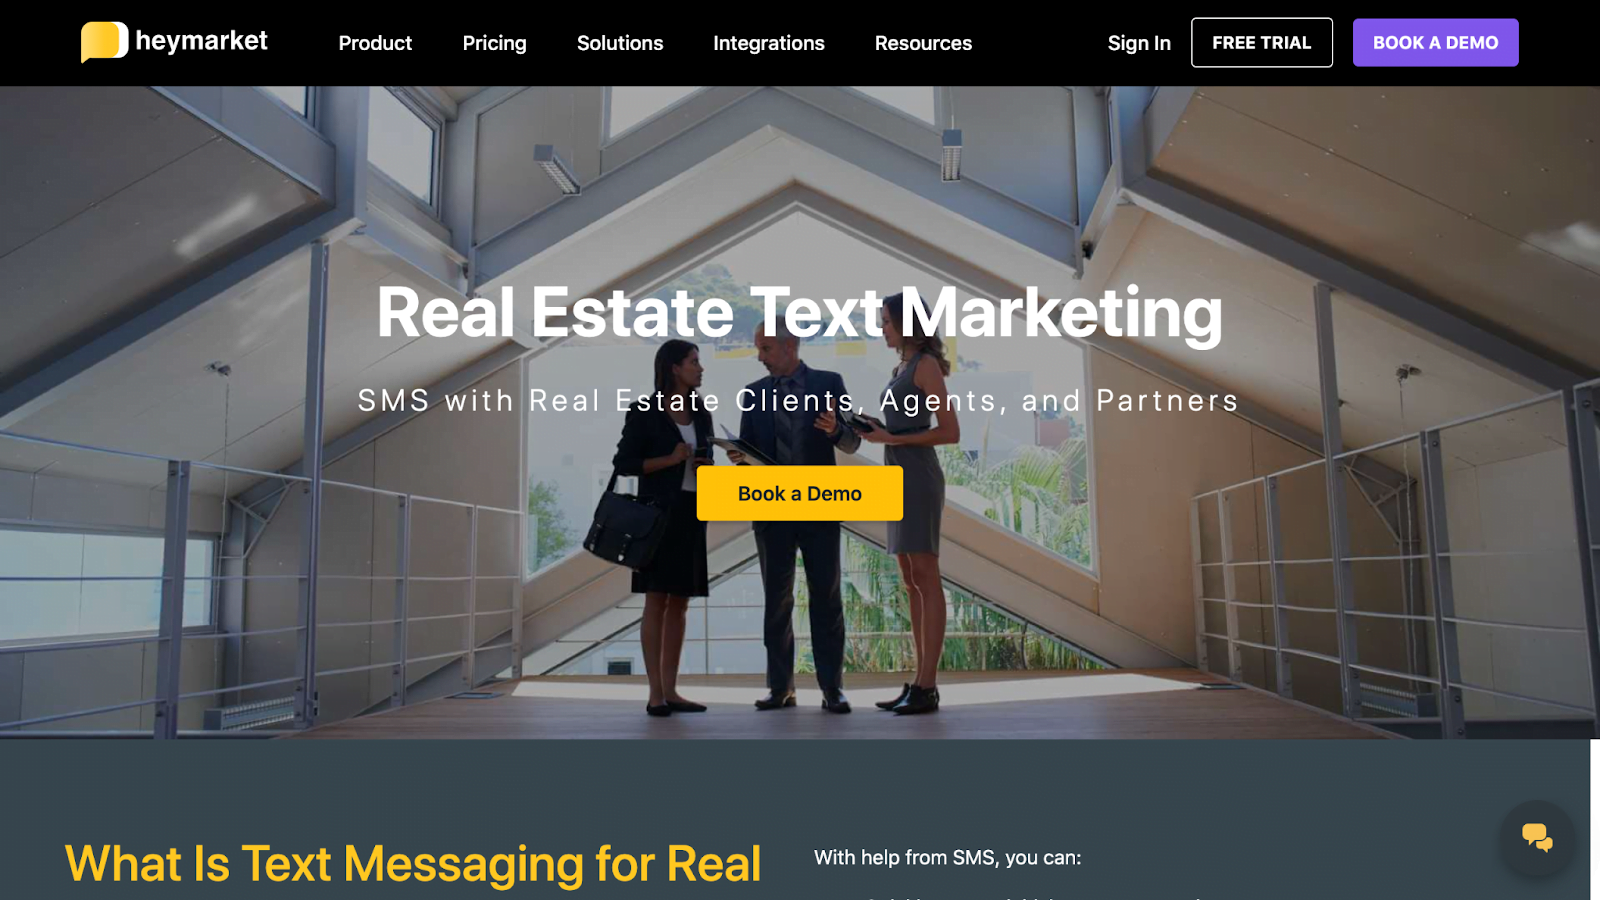 Heymarket - Updates to SMS Marketing Software